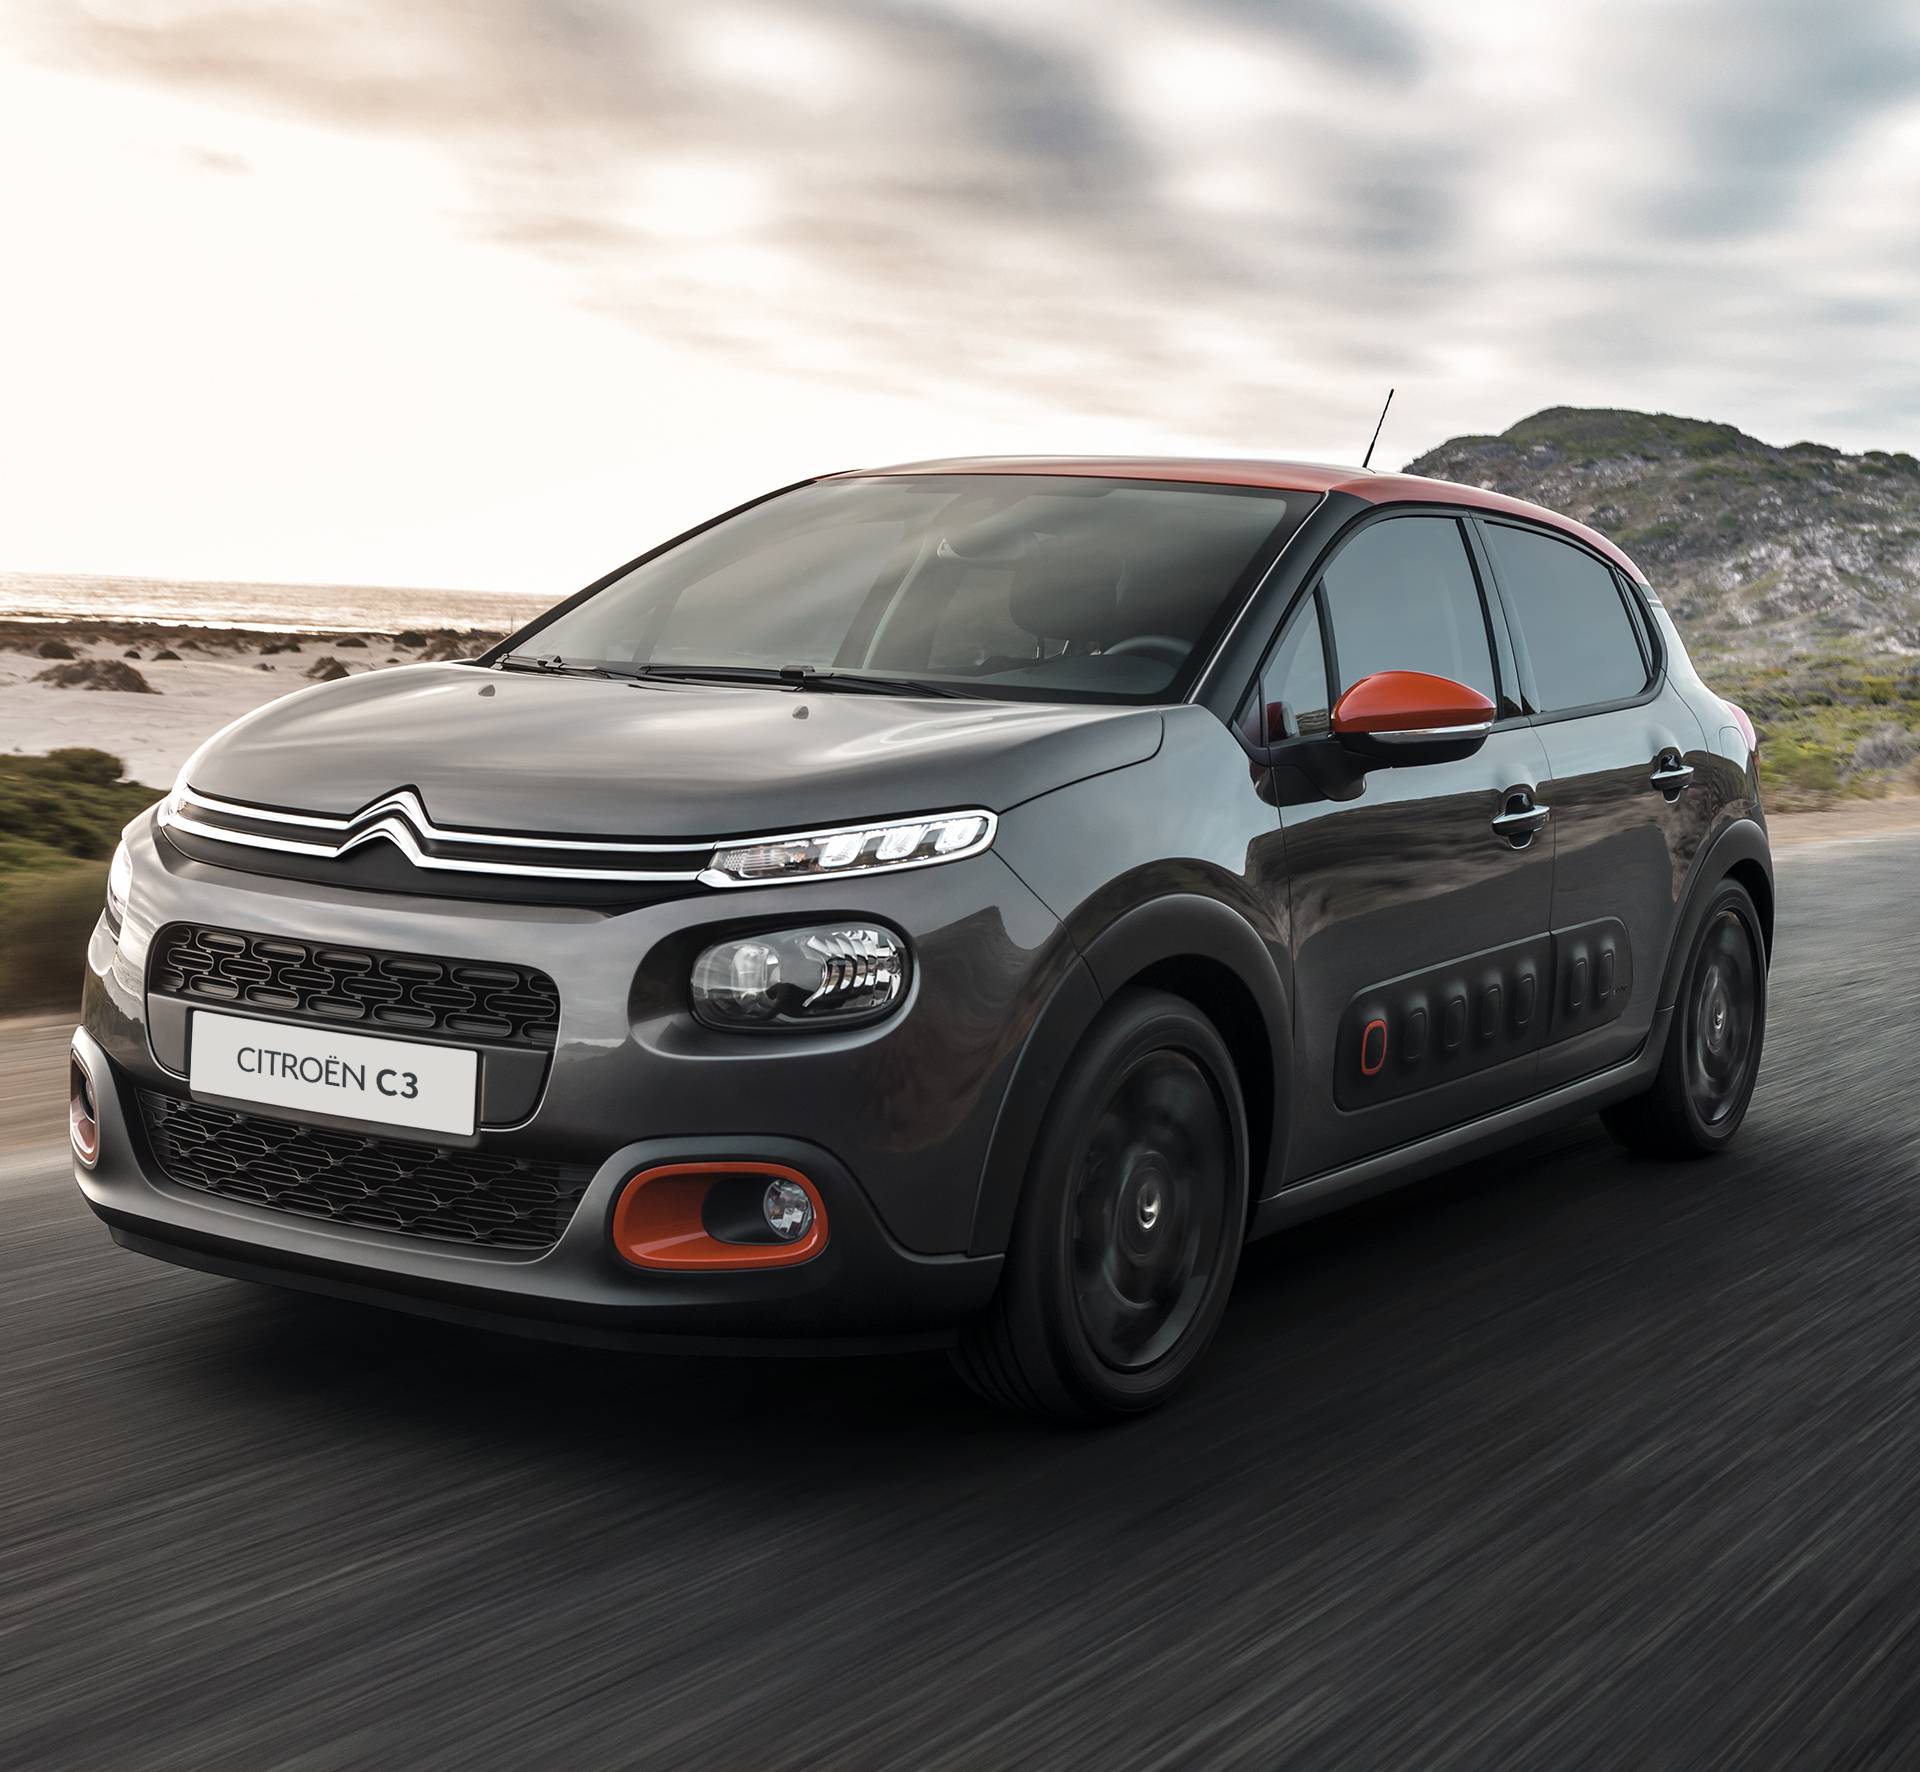 Igraj i osvoji: Sakupi 10 kupona i odvezi se u sjajnom Citroënu